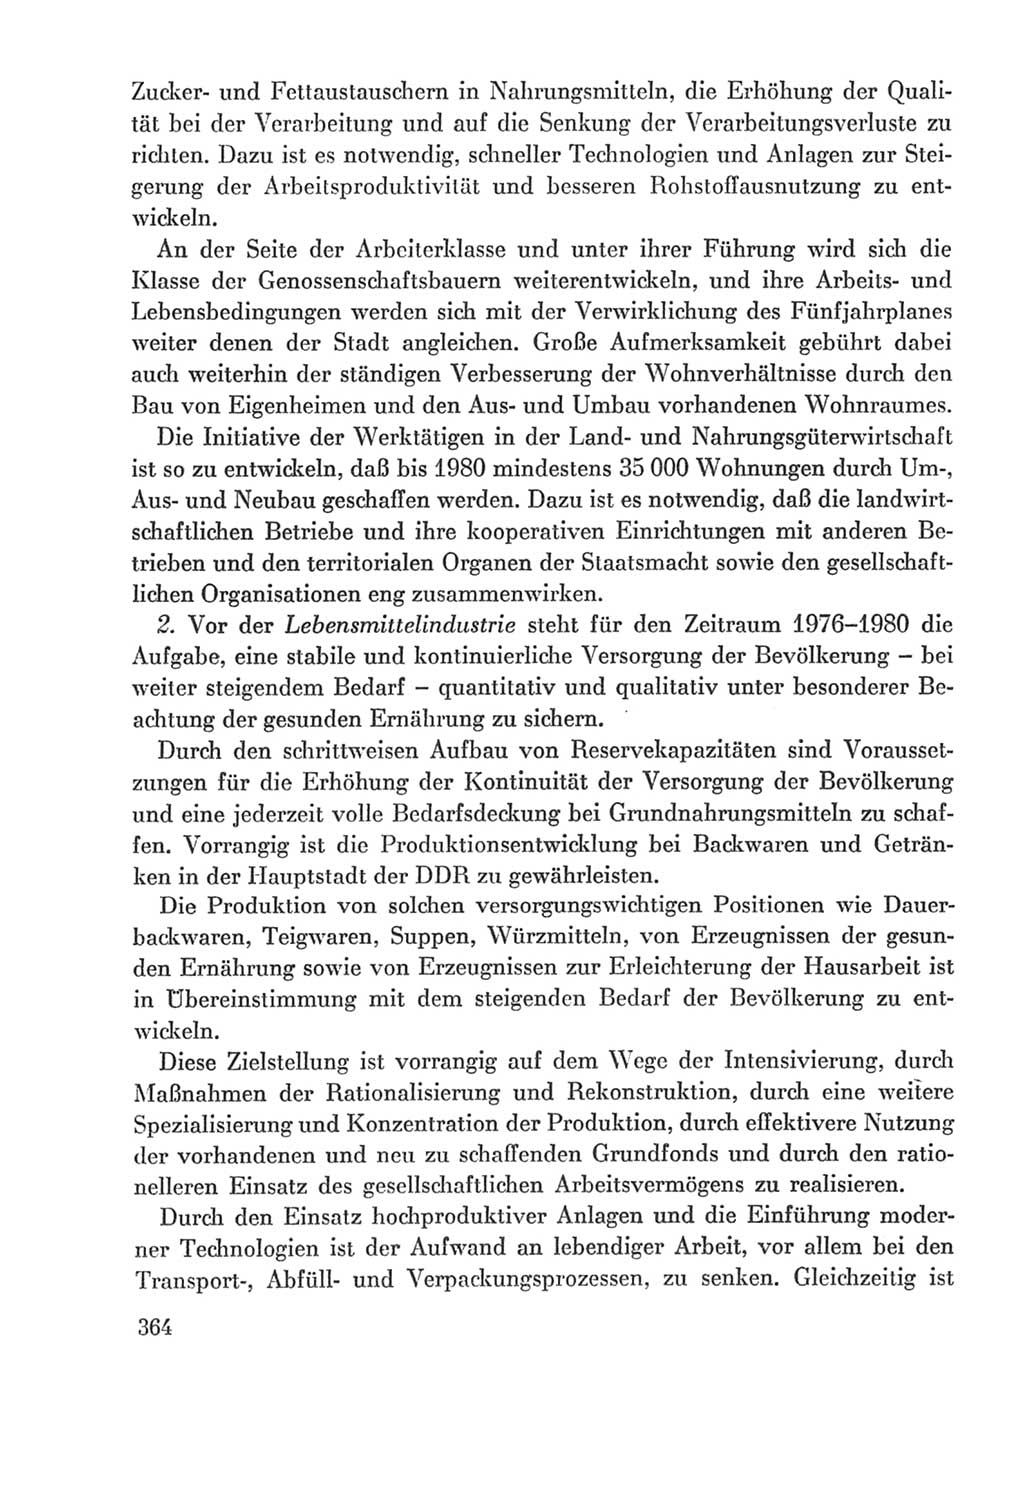 Protokoll der Verhandlungen des Ⅸ. Parteitages der Sozialistischen Einheitspartei Deutschlands (SED) [Deutsche Demokratische Republik (DDR)] 1976, Band 2, Seite 364 (Prot. Verh. Ⅸ. PT SED DDR 1976, Bd. 2, S. 364)